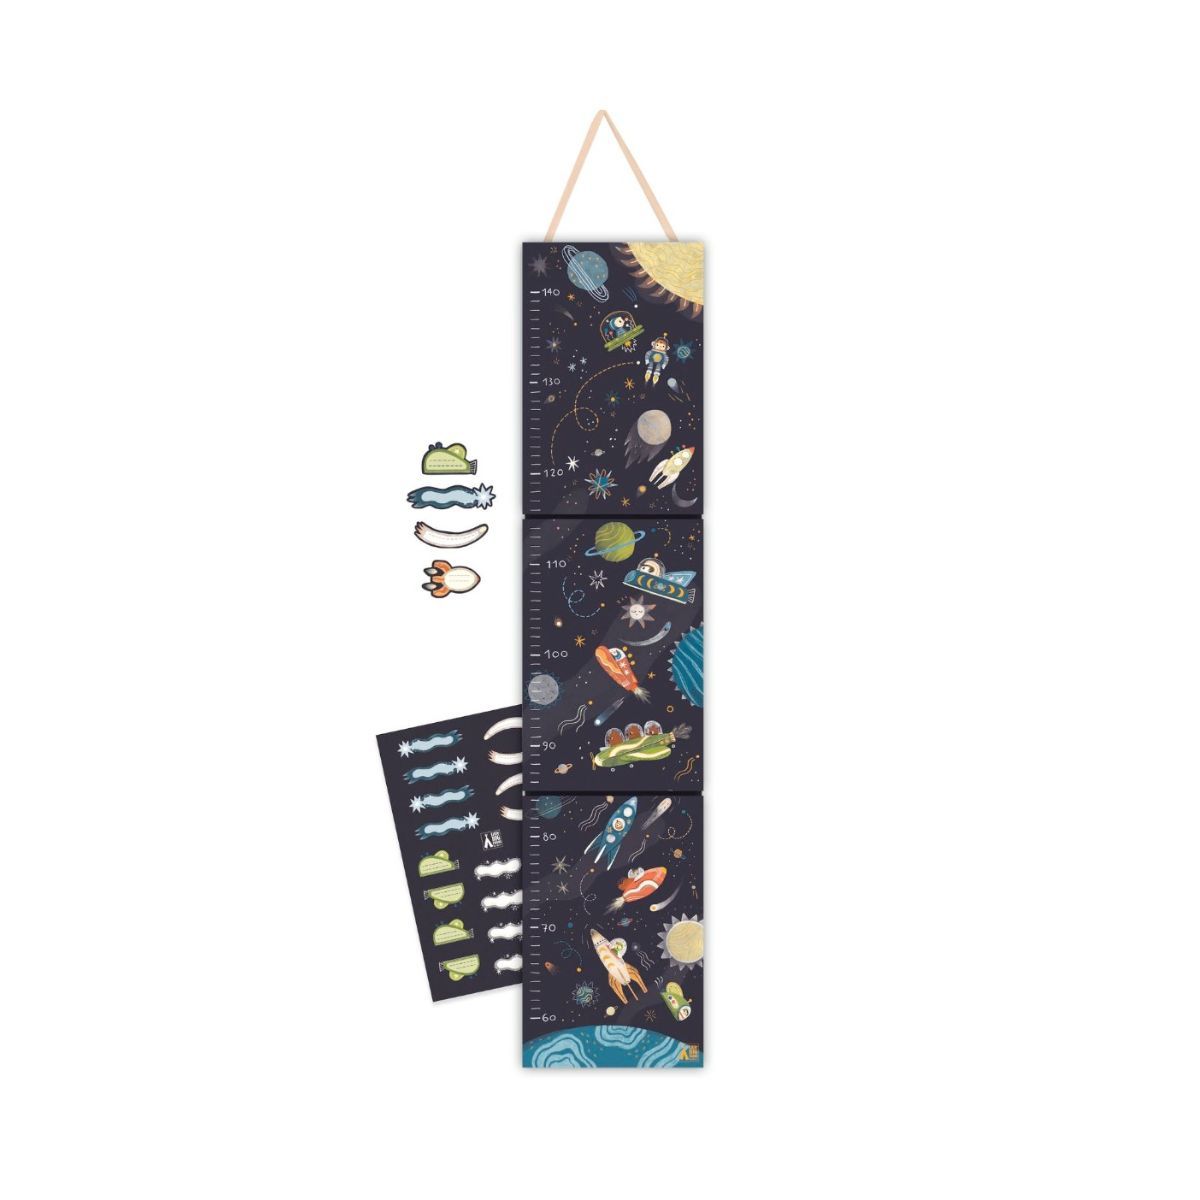 Djeco højdemåler i coated pap med rumraketter, planter og stjerner samt klistermærker til navn og alder